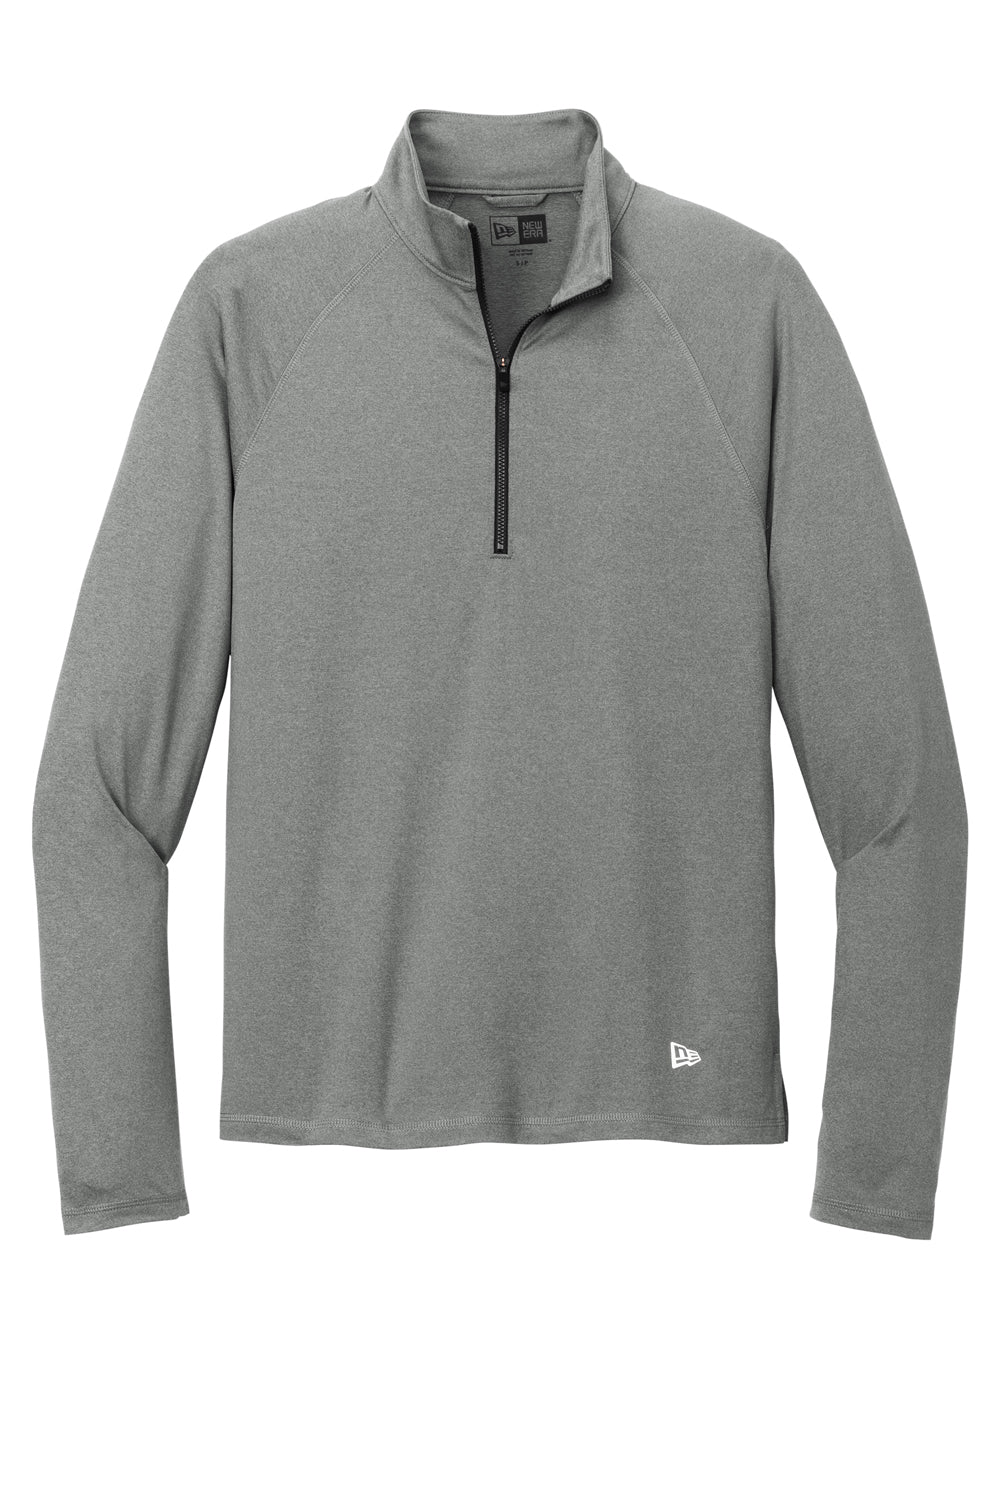 New Era Mens Power 1/4 Zip Sweatshirt Heather Shadow Grey Flat Front